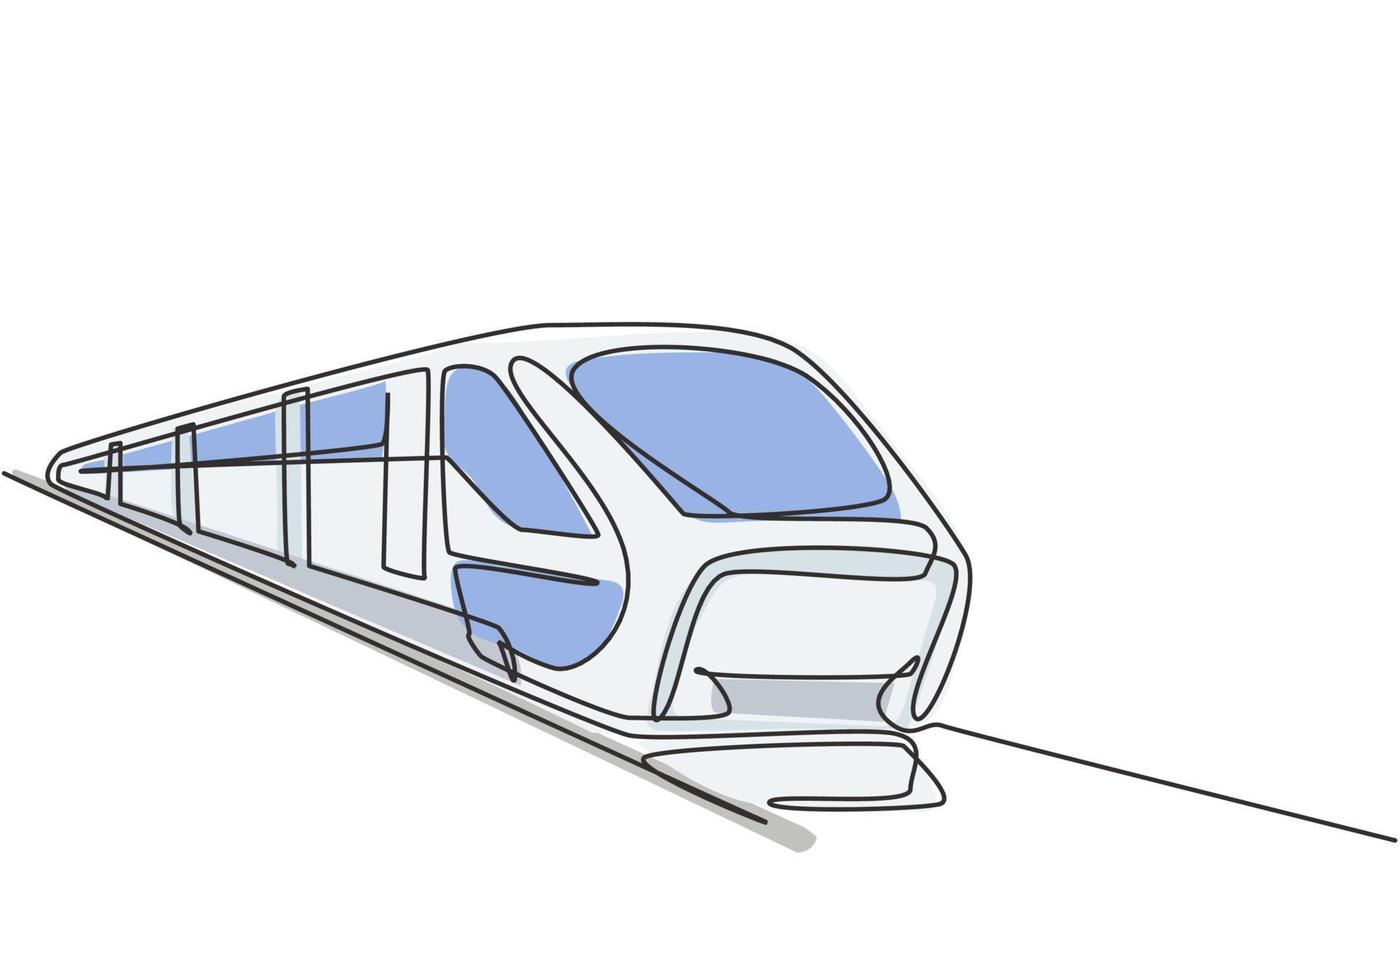 le dessin d'une seule ligne du train vu de l'avant se prépare à transporter les passagers rapidement, en toute sécurité et confortablement jusqu'à leur destination. ligne continue moderne dessiner illustration vectorielle graphique de conception. vecteur